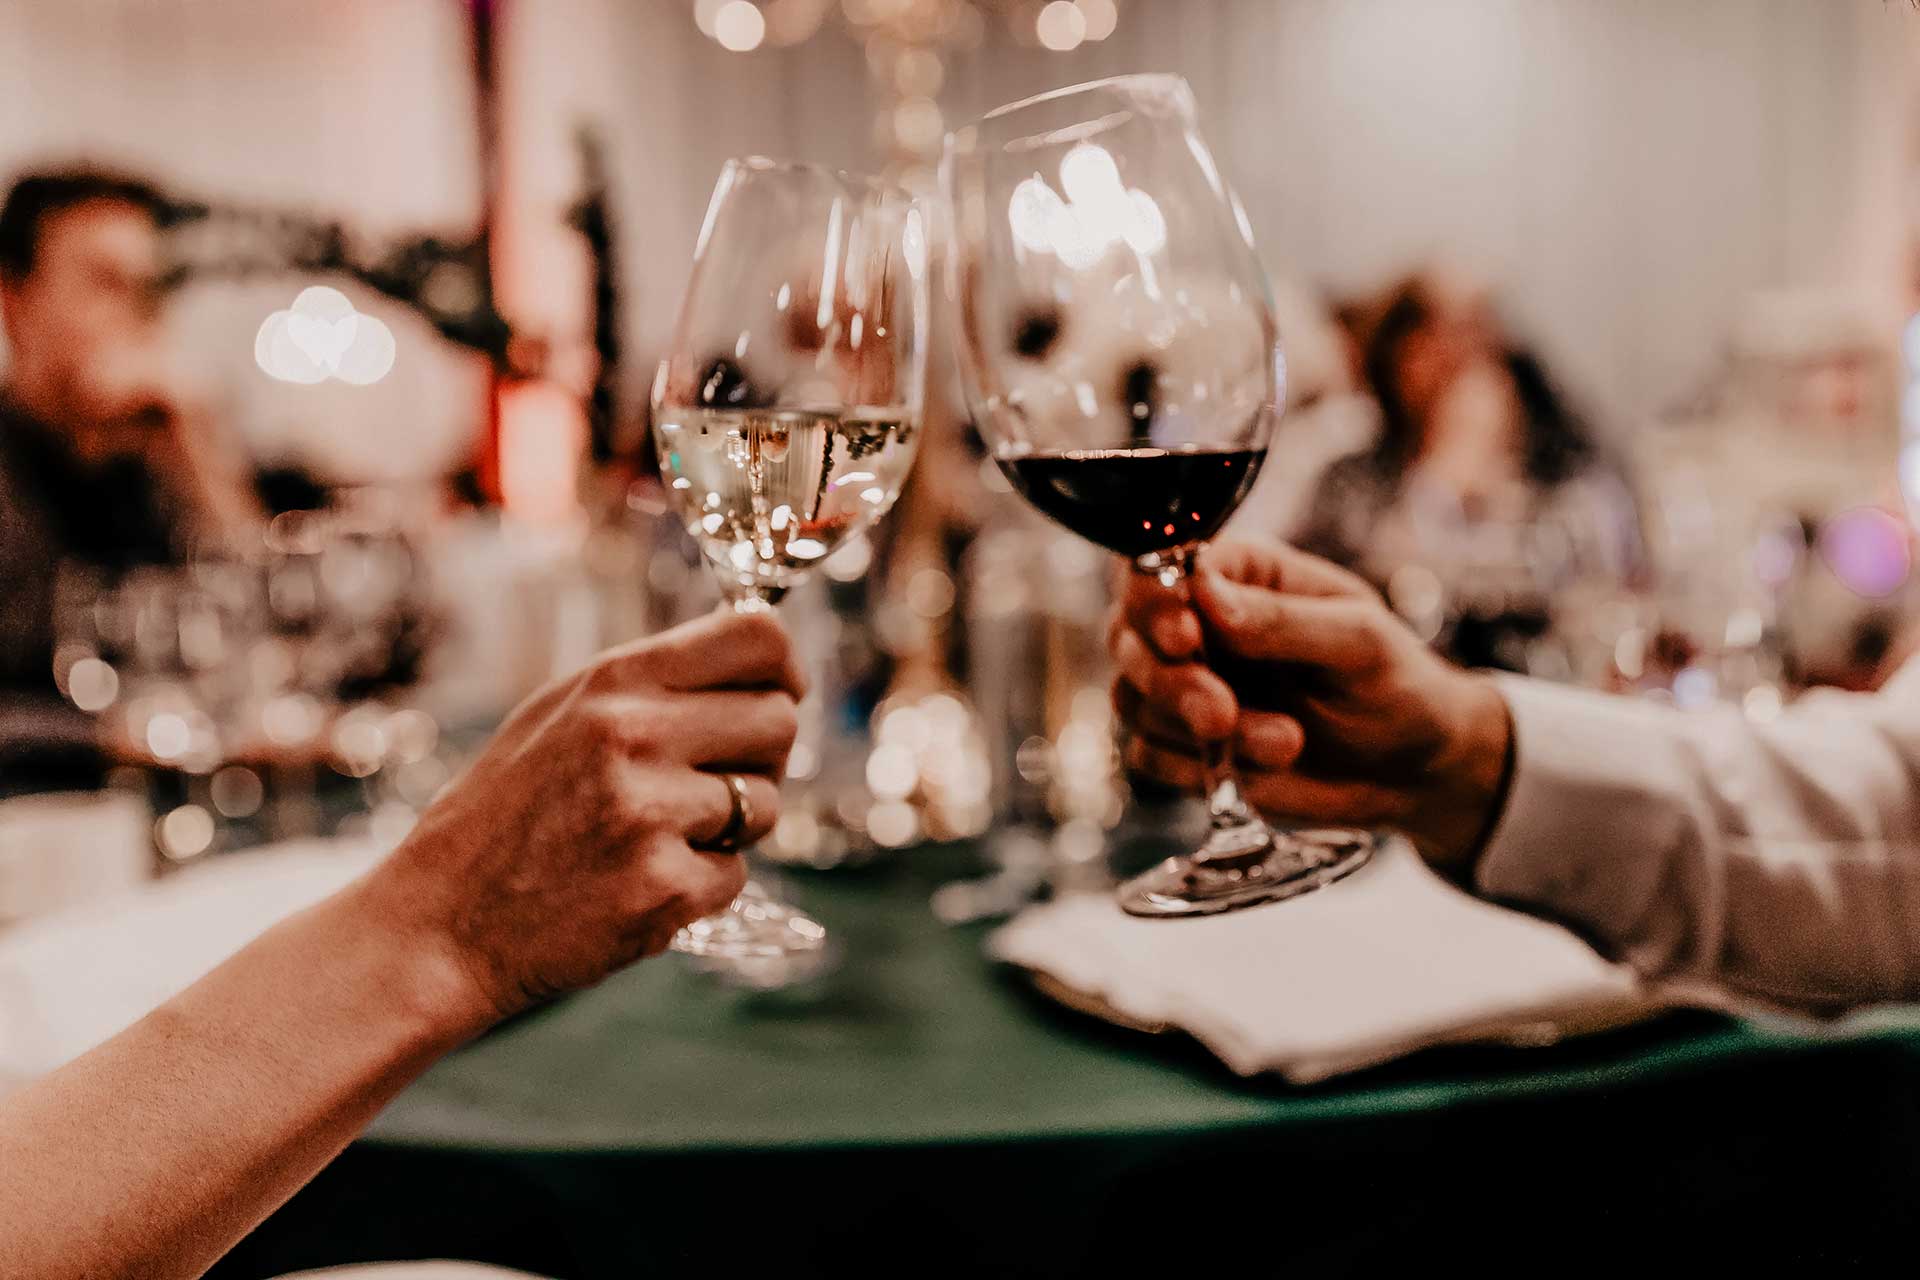 Wie entscheidet man sich für den perfekten Hochzeitswein, wenn man im Grunde nicht viel Ahnung von Wein hat? Wir trinken zwar gerne ab und zu Mal ein Gläschen Wein zum Essen, das war's dann aber auch schon wieder. Ich nehme dich heute mit auf unsere kleine Reise und erzähle dir, wie wir die "Welcher Wein für die Hochzeit?"-Frage beantwortet haben. www.whoismocca.com #hochzeitswein #herbsthochzeit #rotwein #weisswein